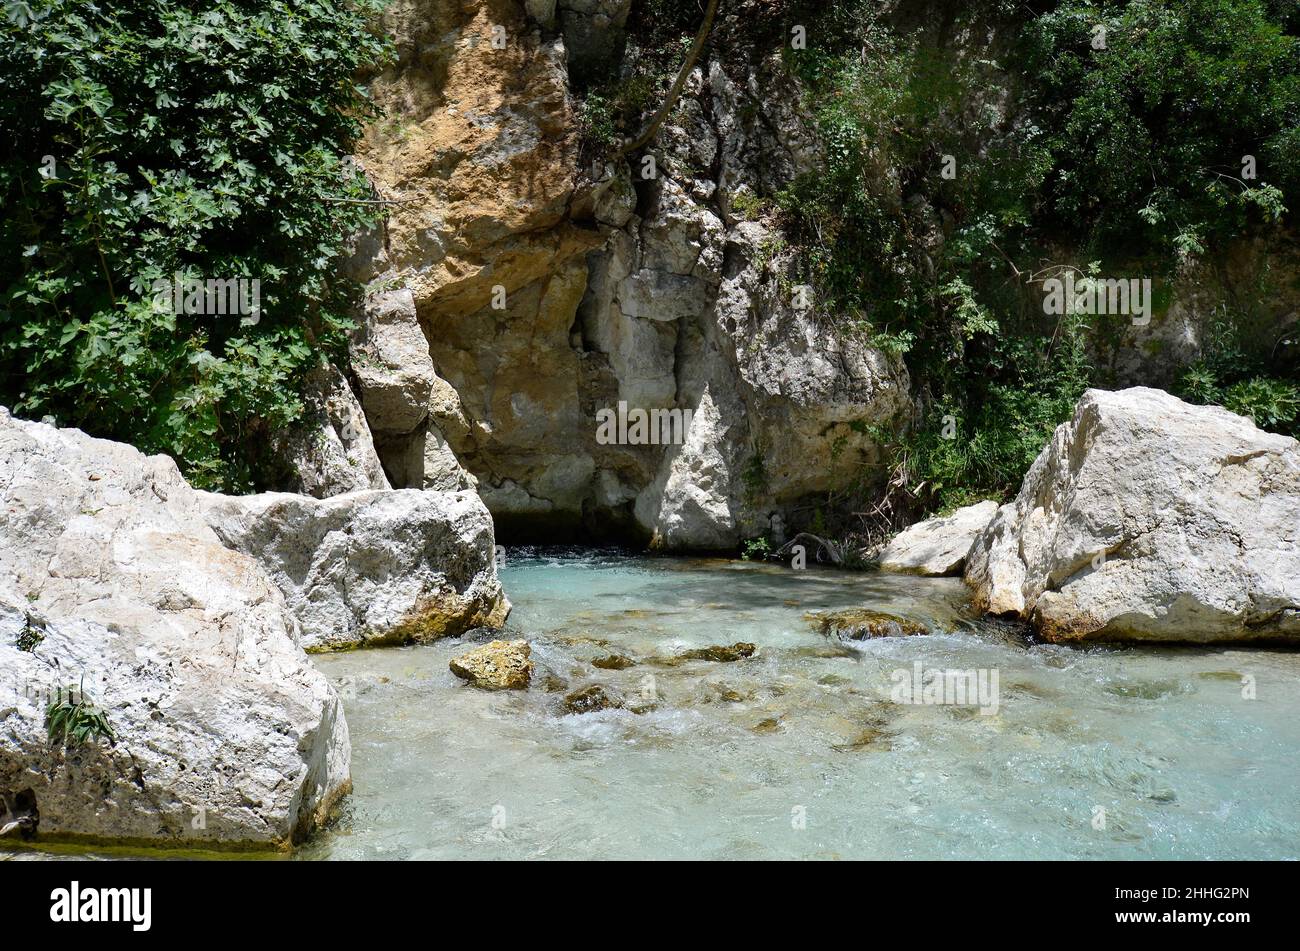 Grèce, Glyki, l'eau claire mais froide de la rivière Acheron, dans la mythologie grecque Acheron était l'une des rivières du sous-monde grec. Banque D'Images